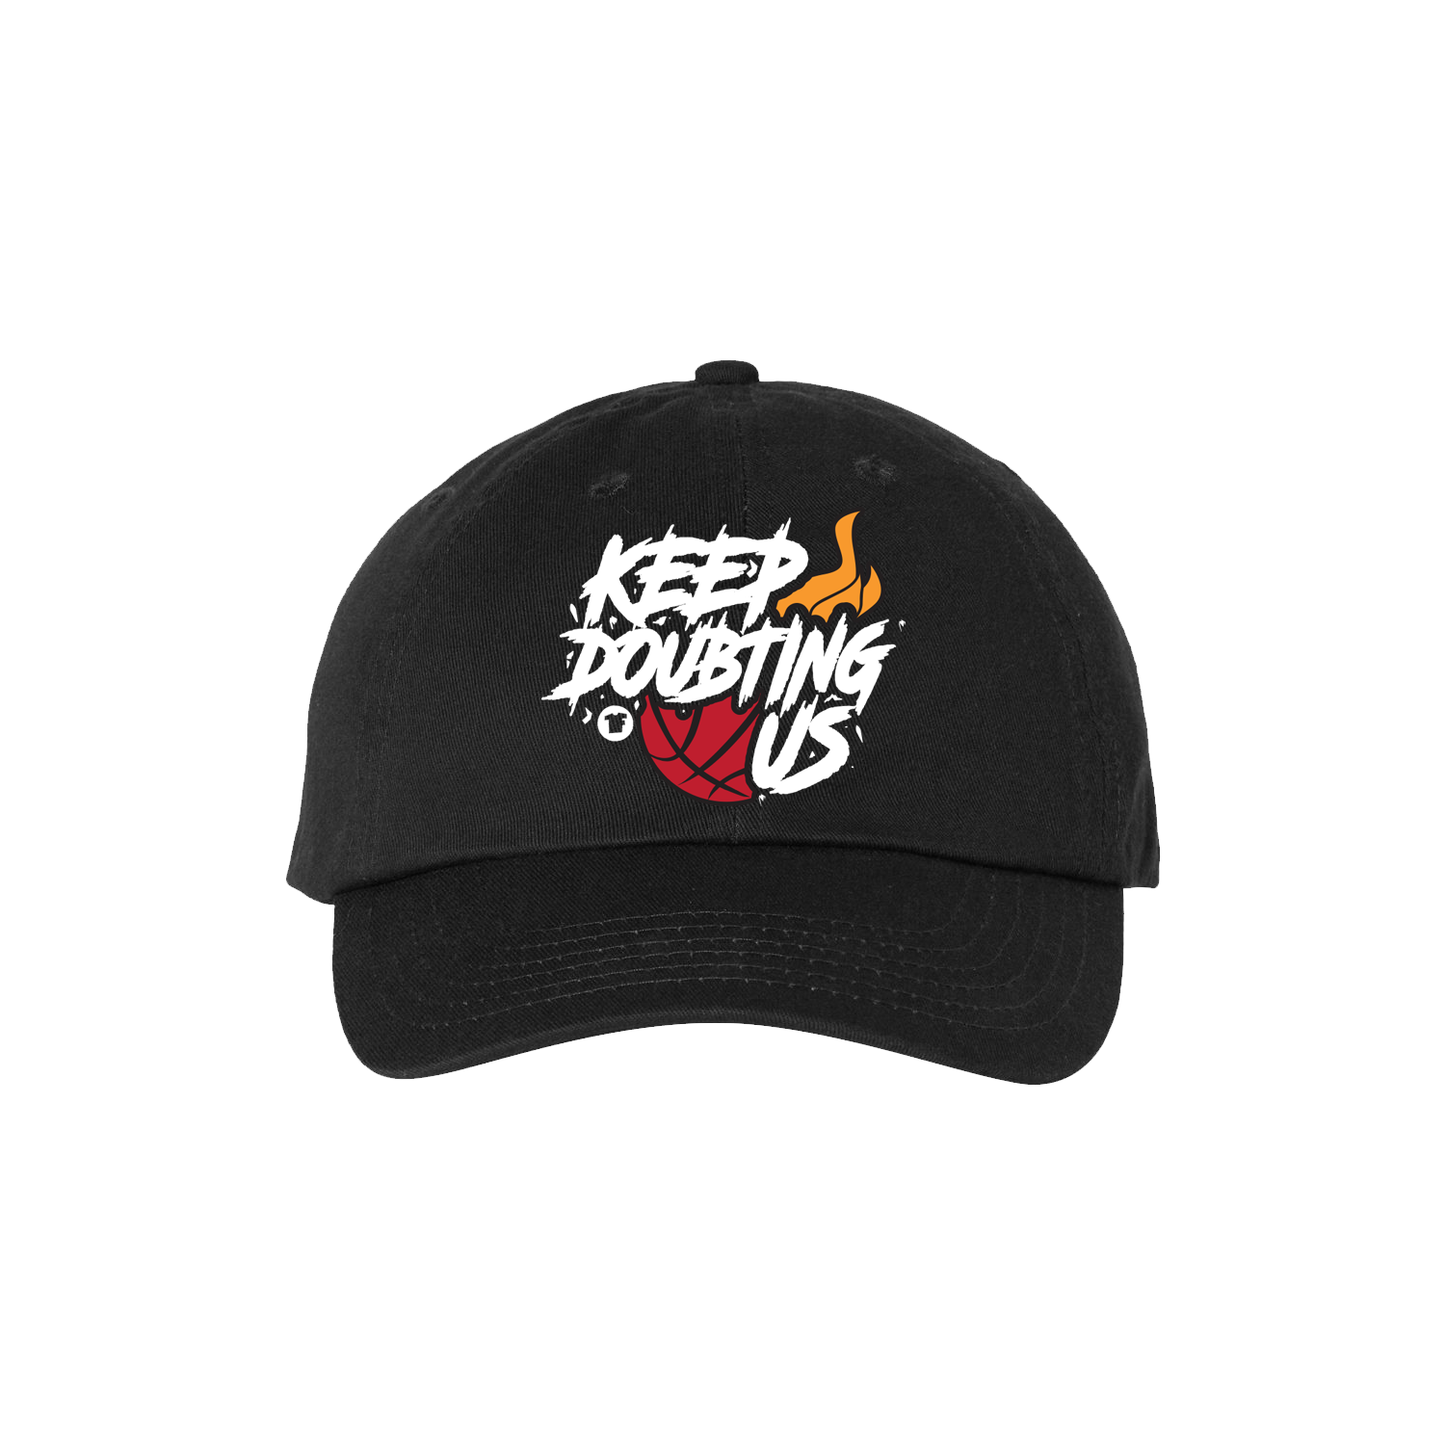 Keep Doubting Us 🔥 Hat